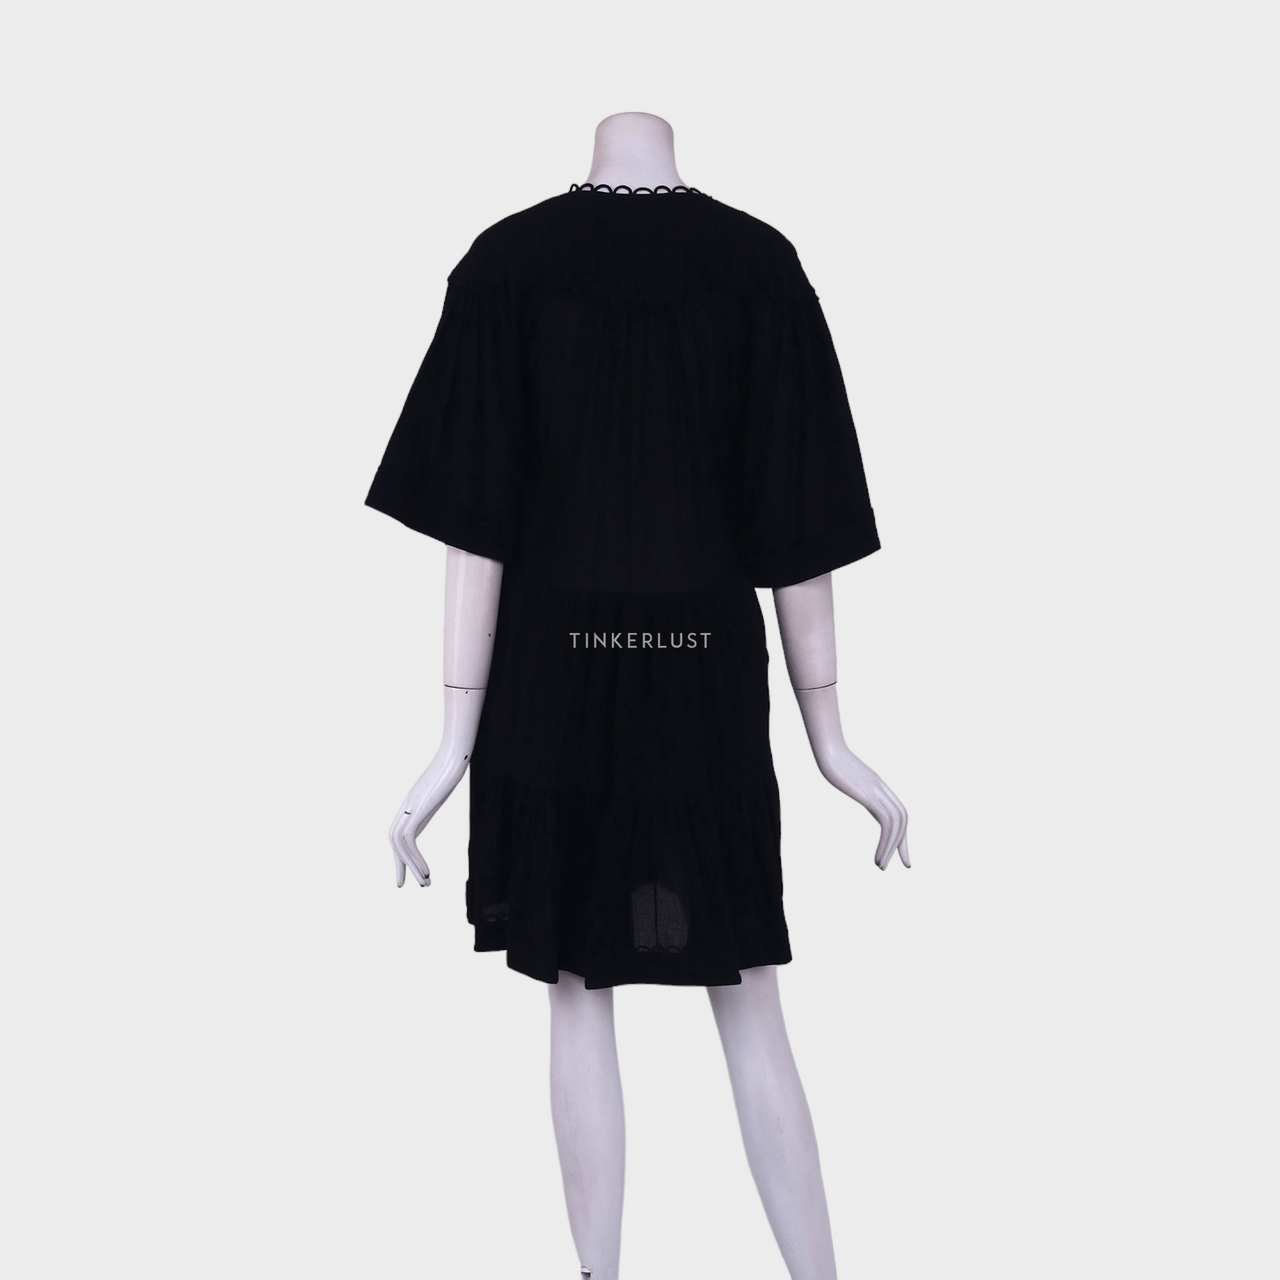 Magali Pascal Black Mini Dress